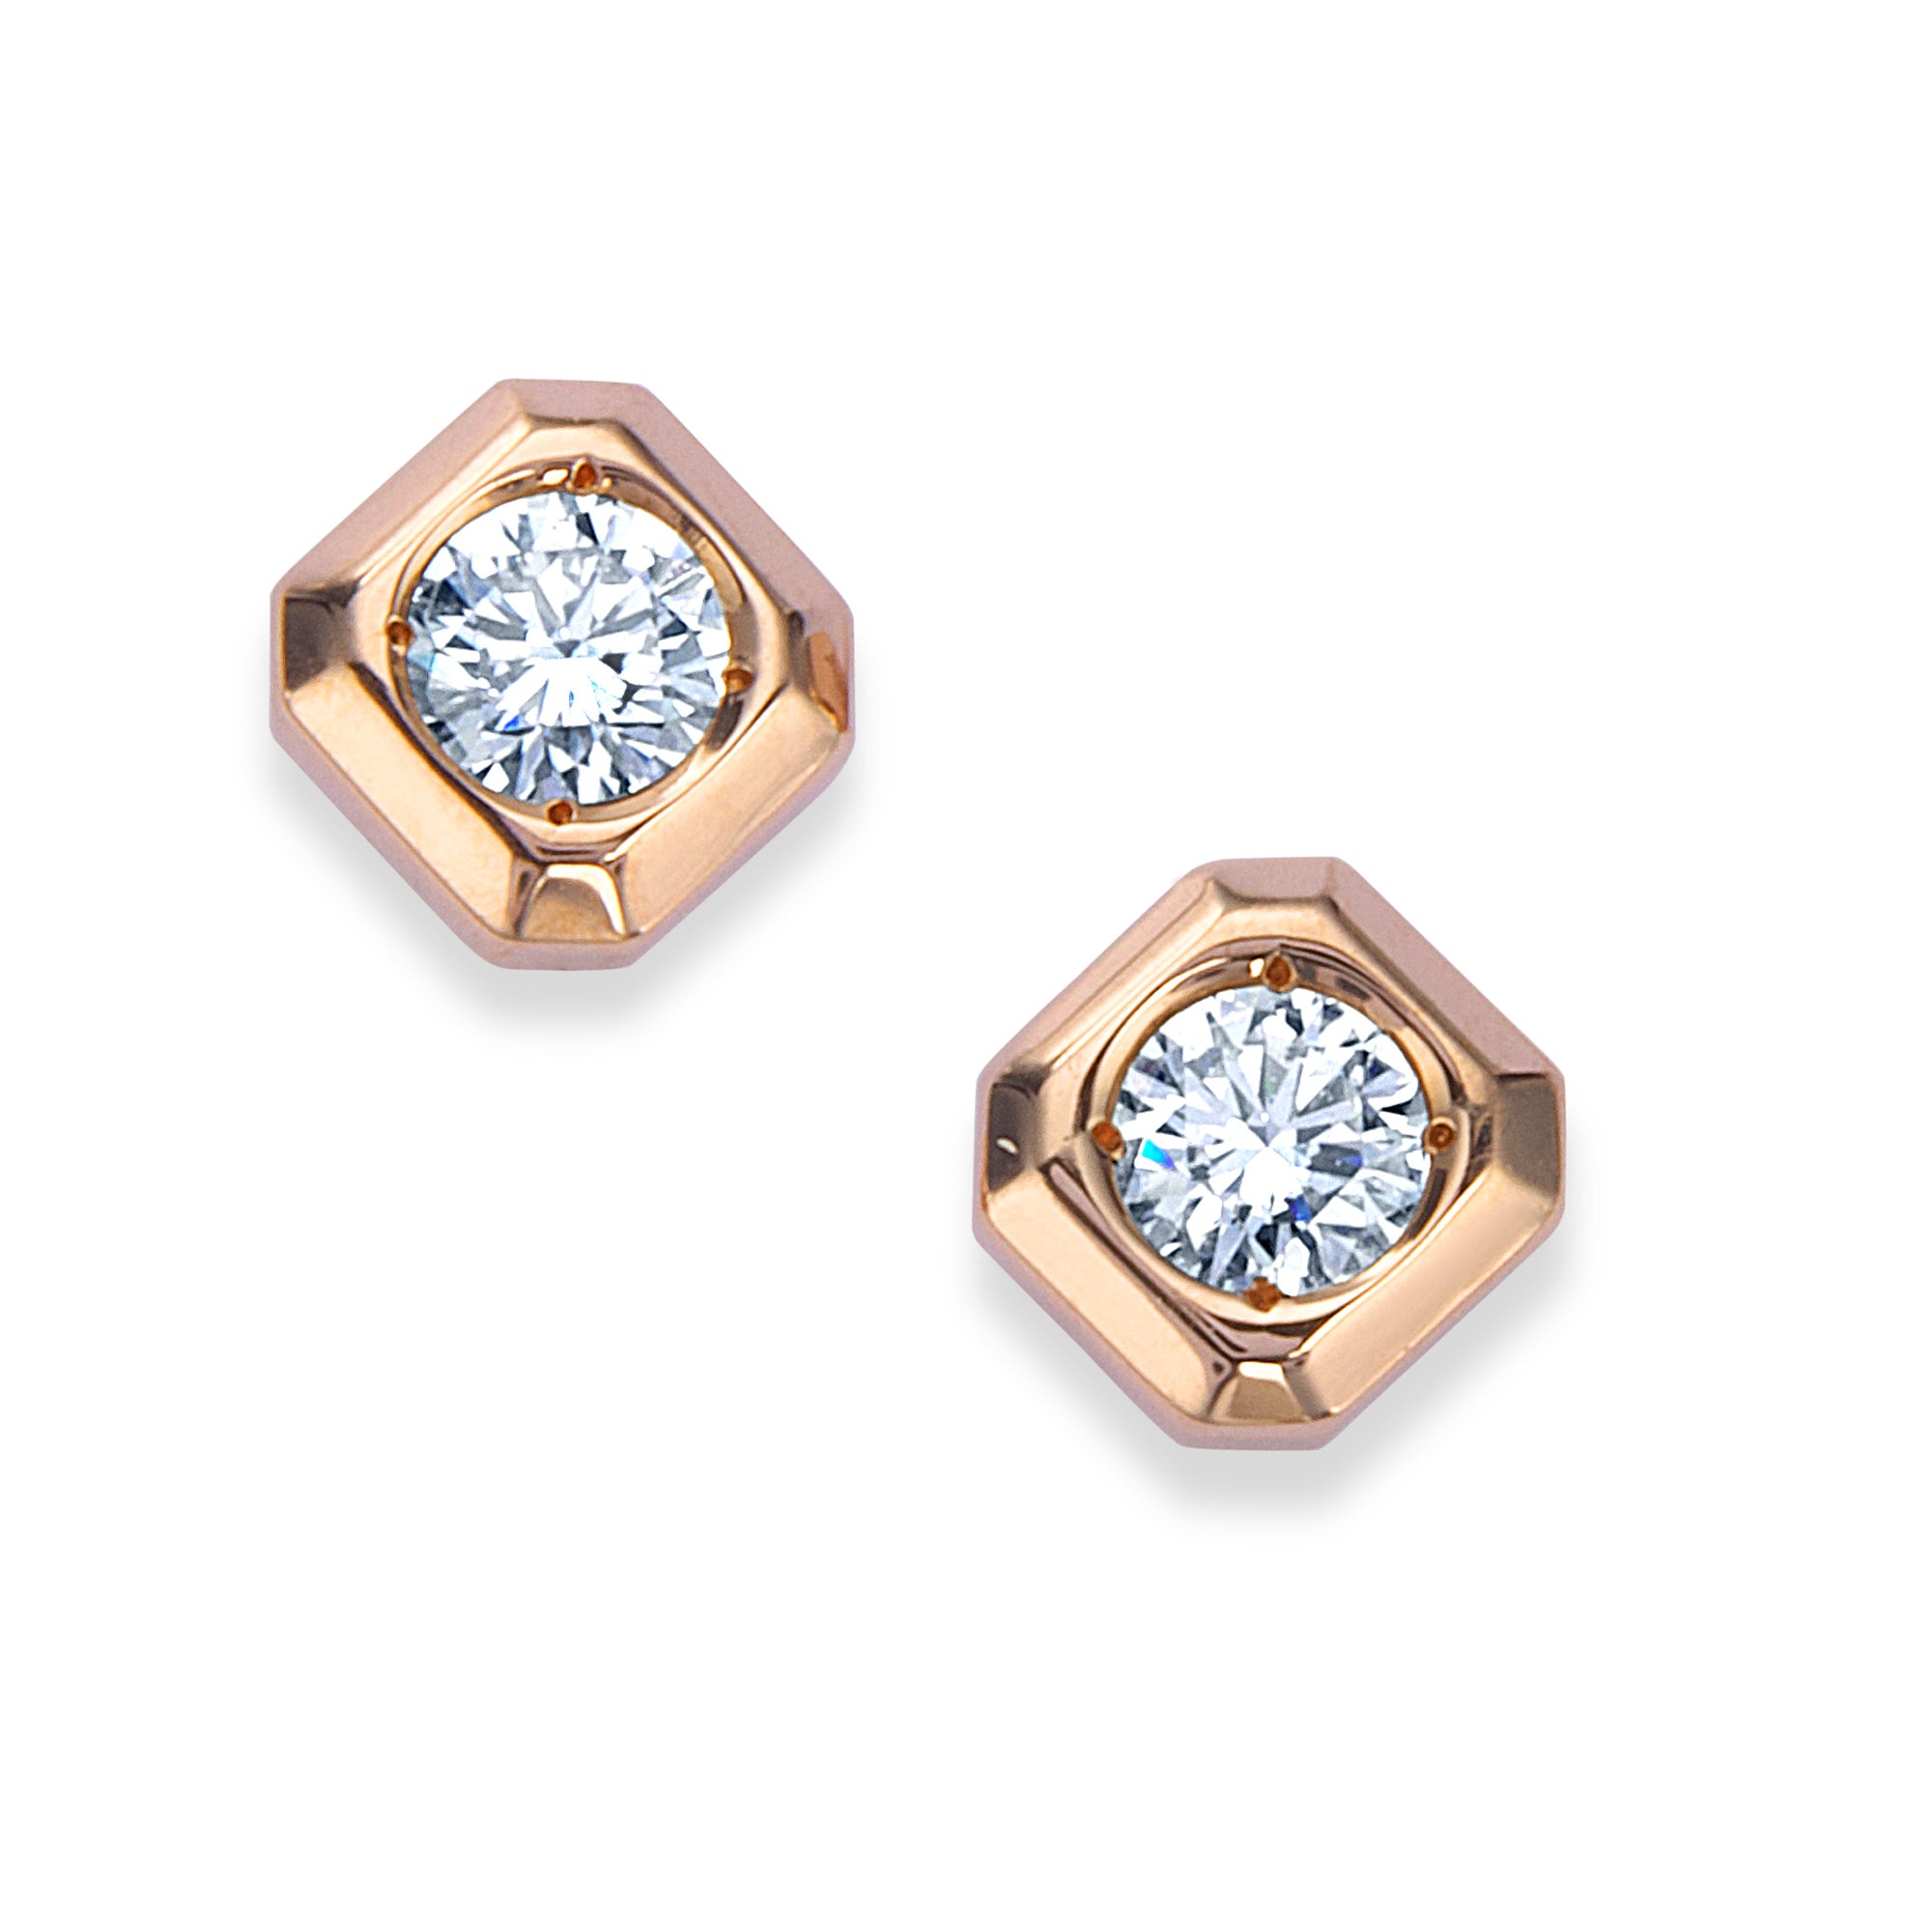 K18 pink gold diamond earrings